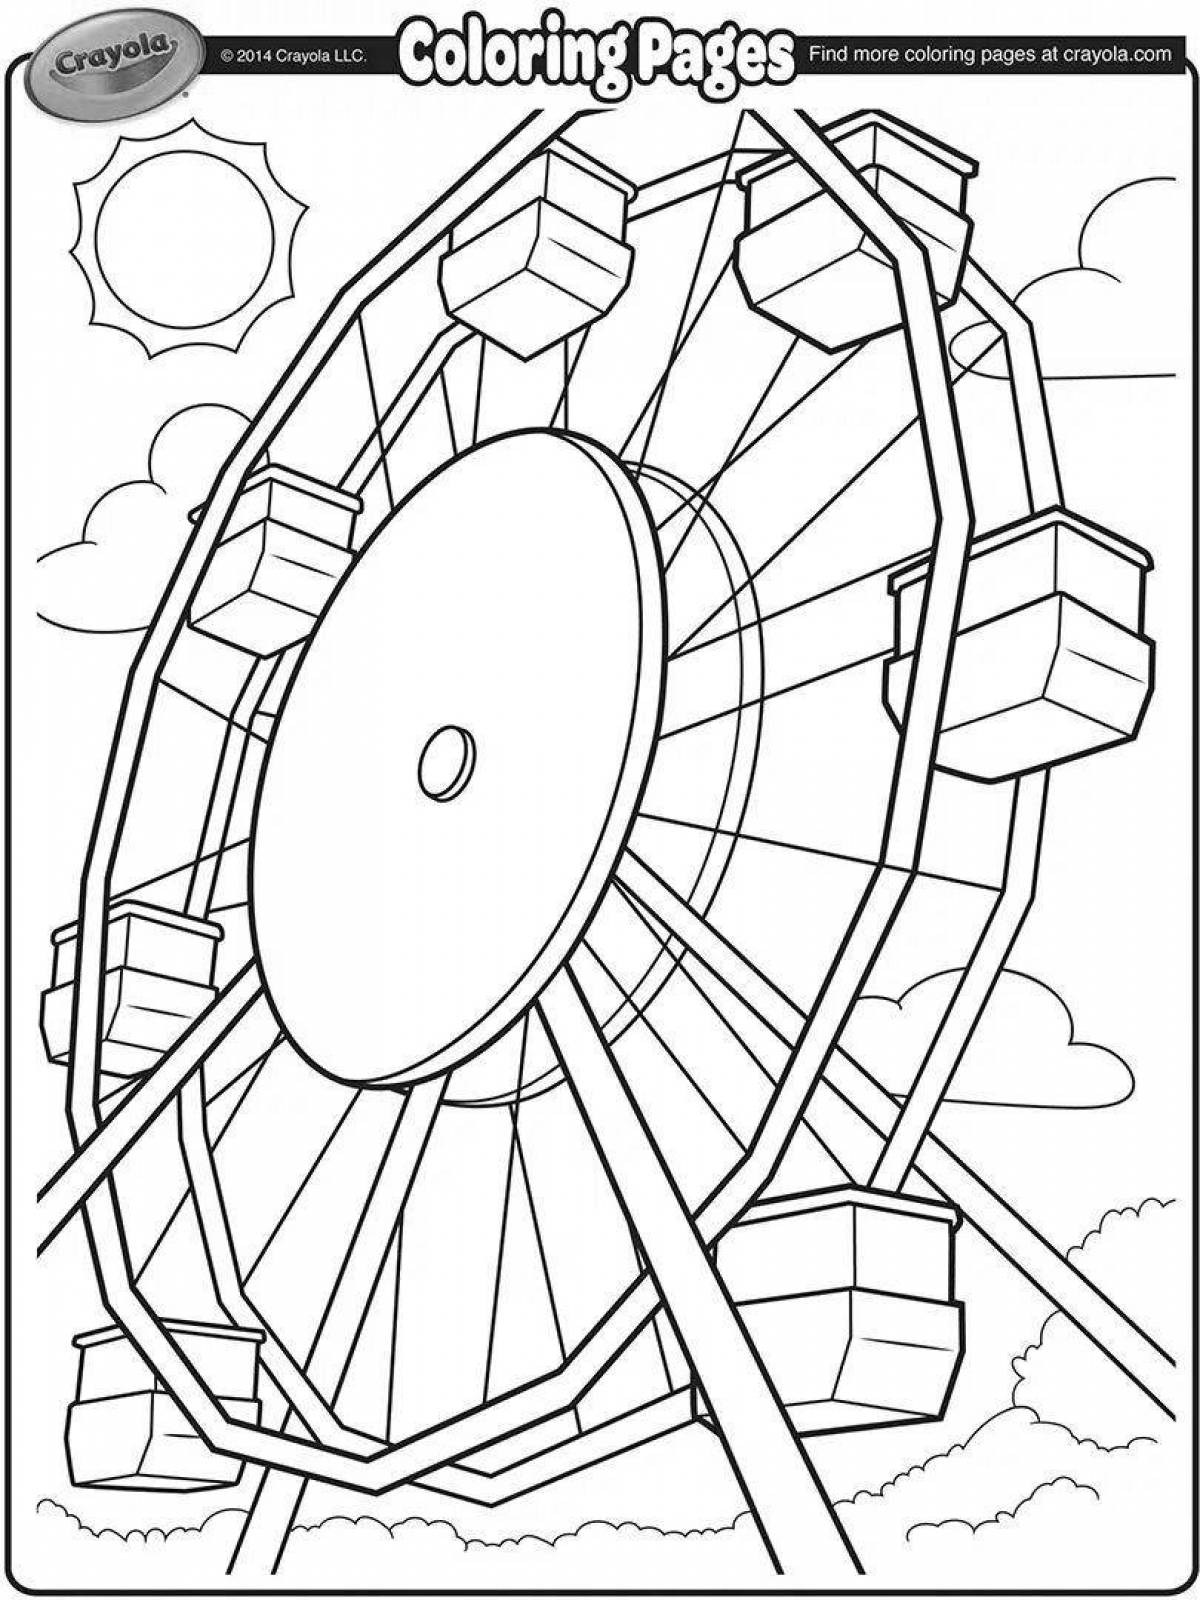 Ferris wheel jovial coloring book for kids